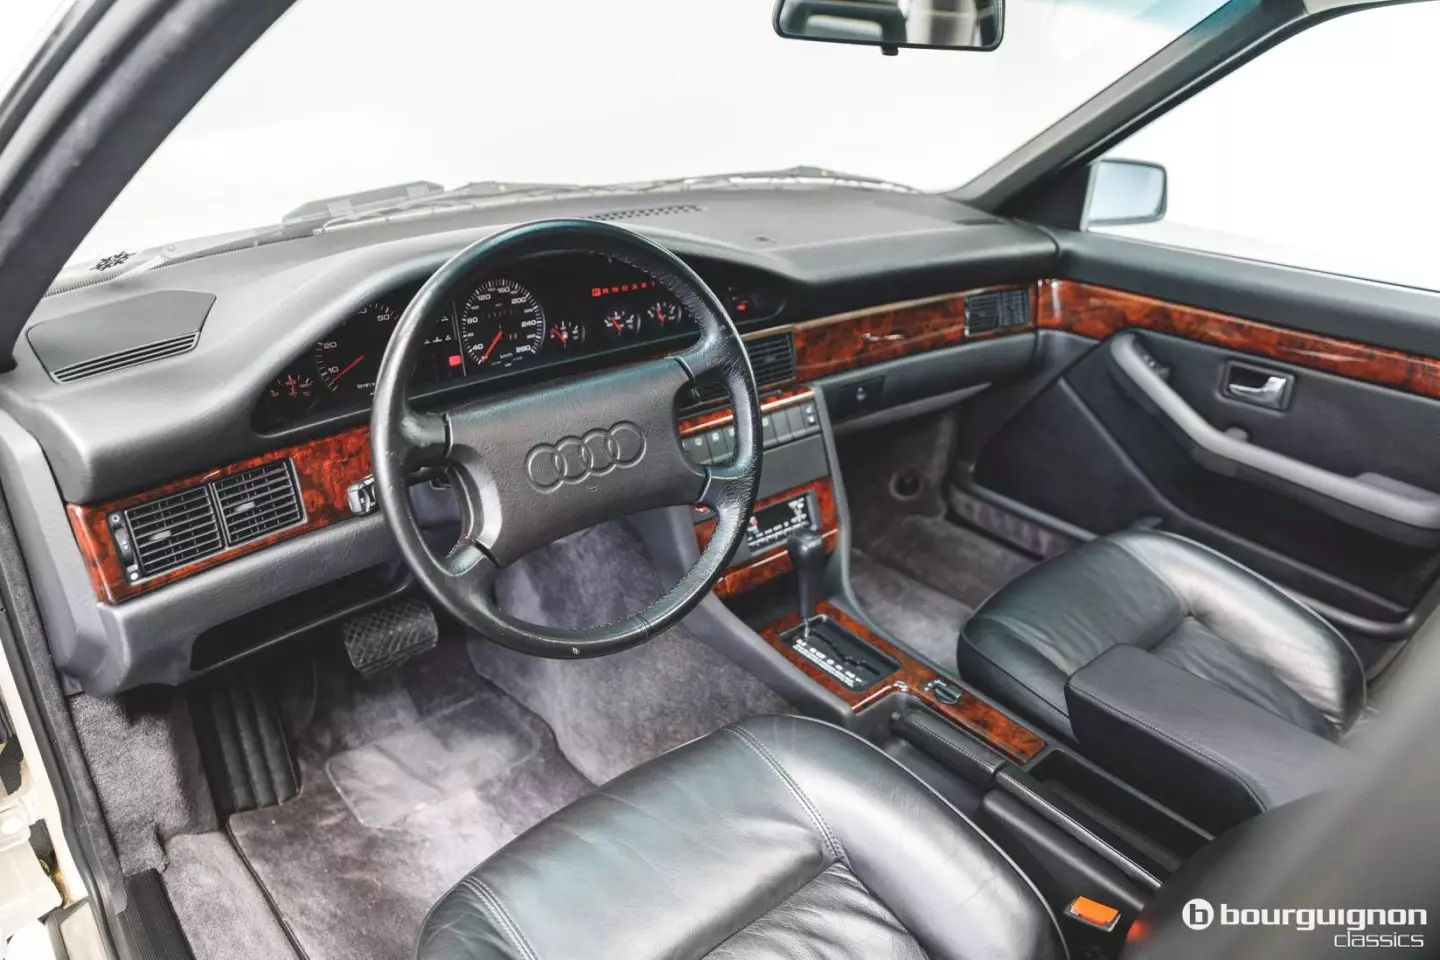 I-Audi V8 1990